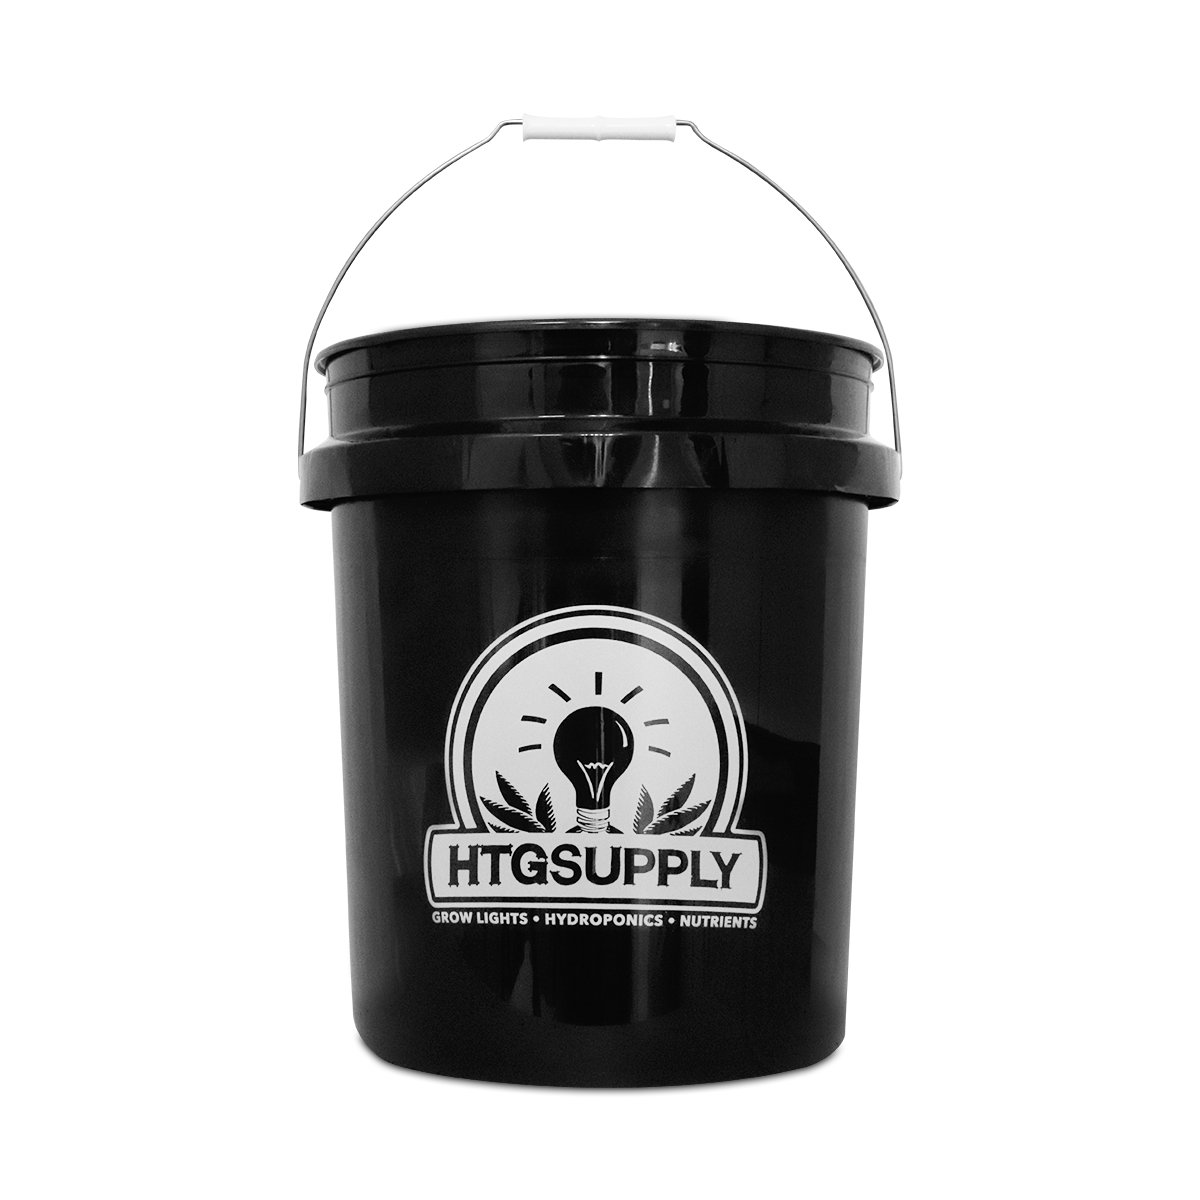 5 Gallon Bucket, Black - RASA Garden Supply Company